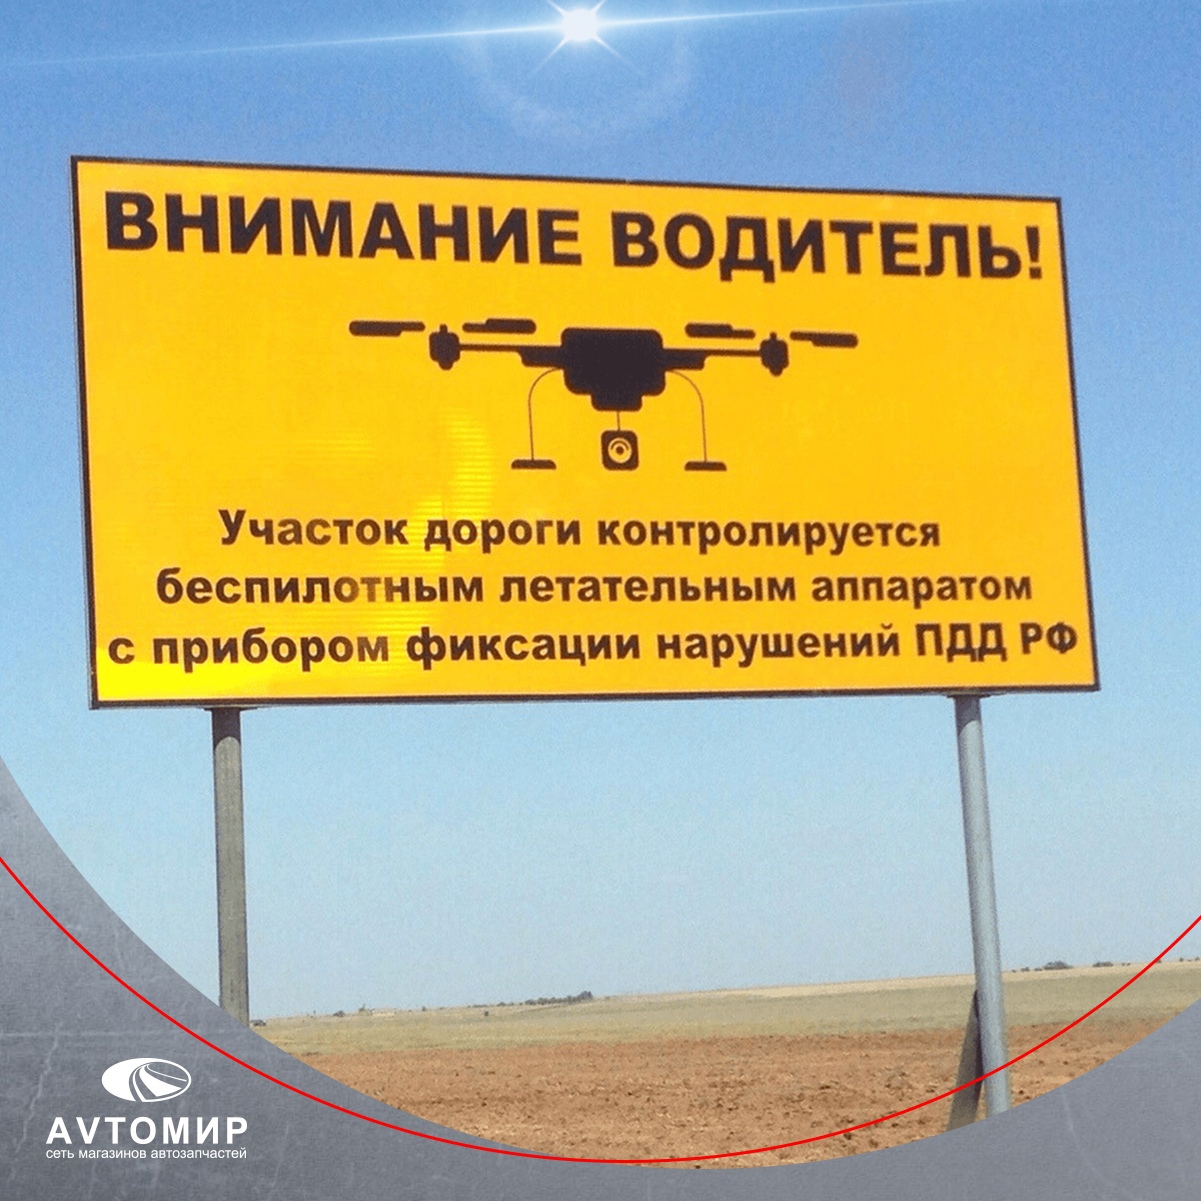 ГИБДД стала использовать дроны для выявления нарушений ПДД в 17 регионах России.